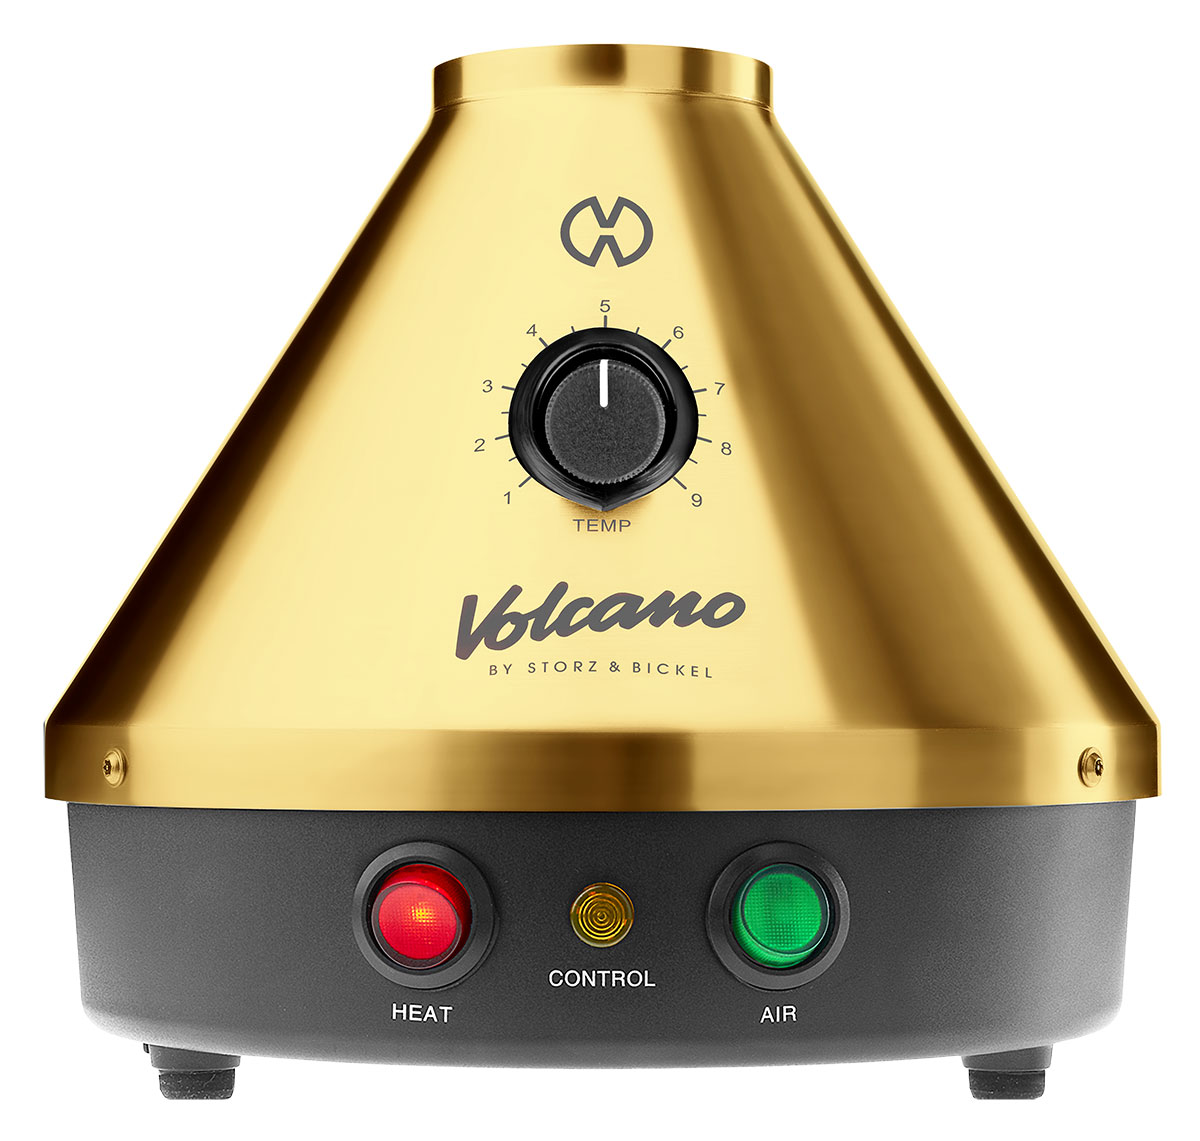 Im Jubiläumsjahr gibt es die Volcano-Classic-Version in 24-karätigem Gold.